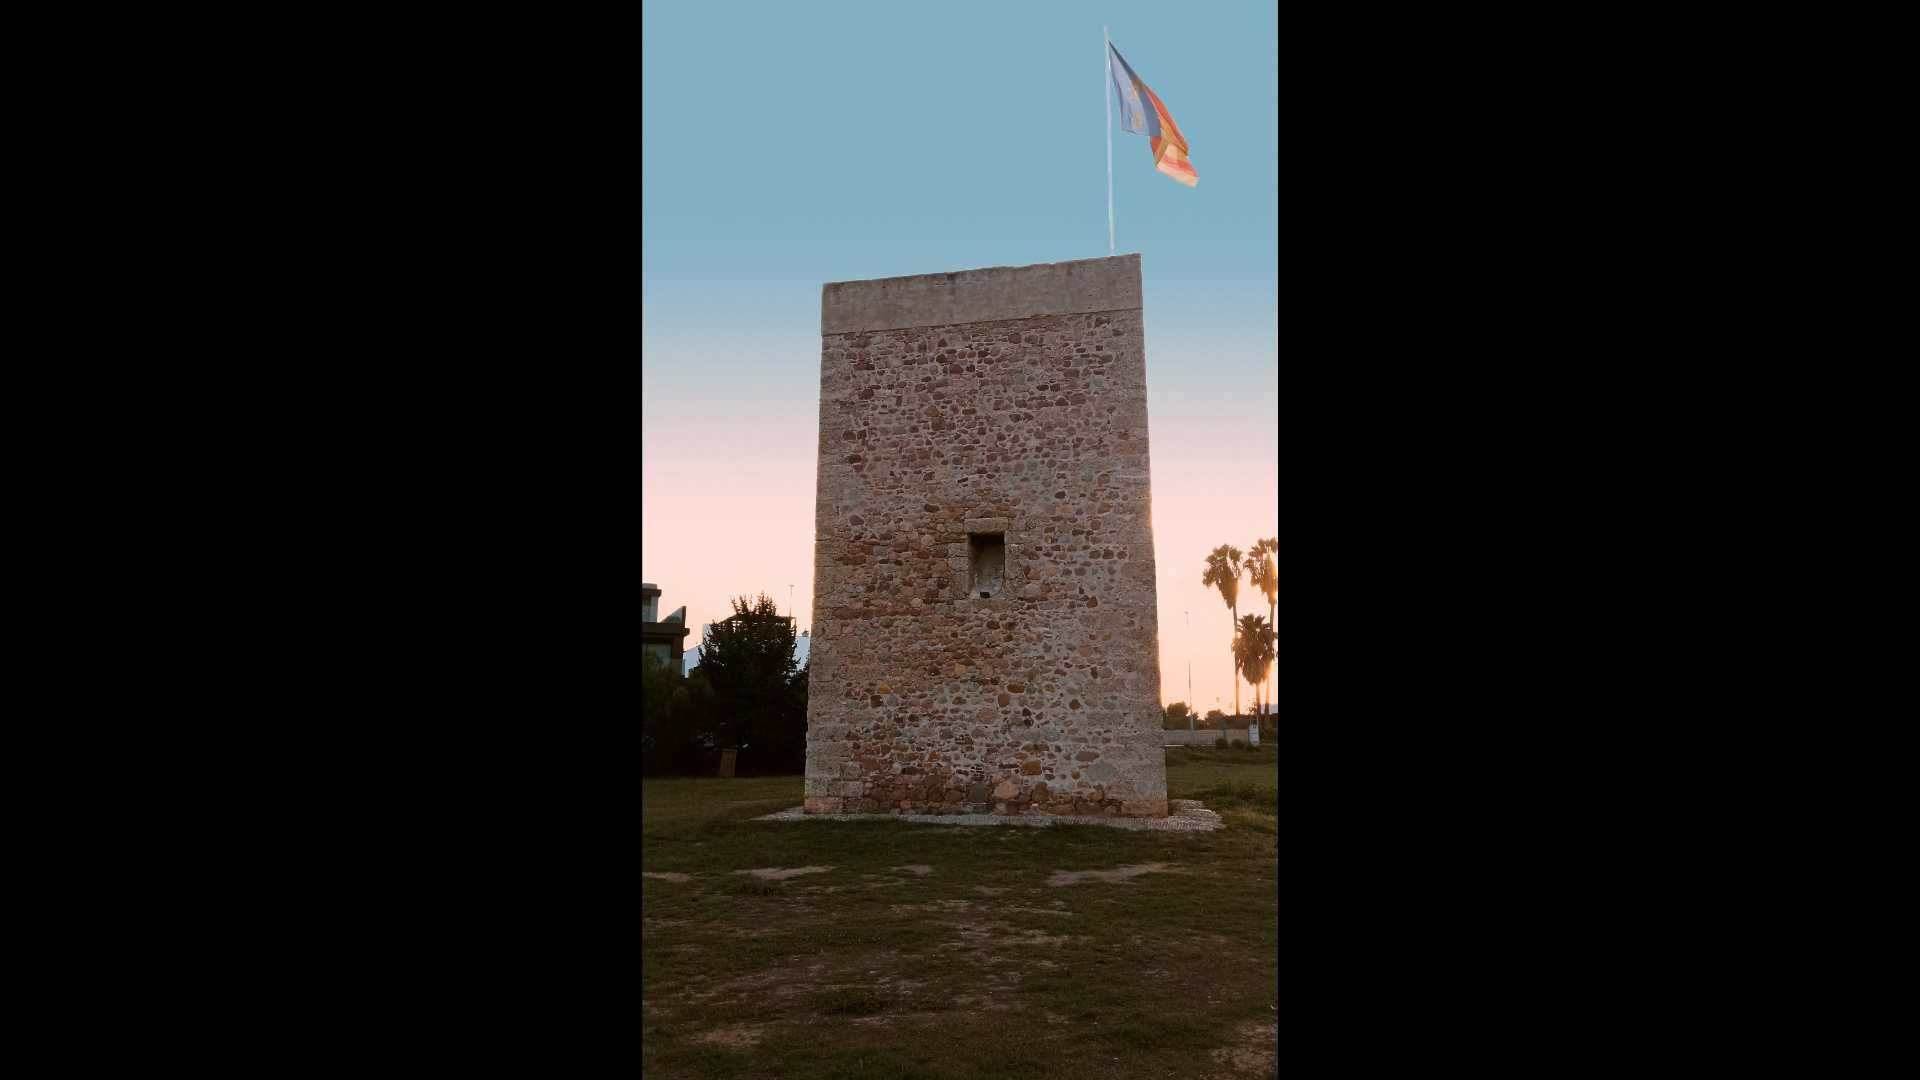 Torre del Mar